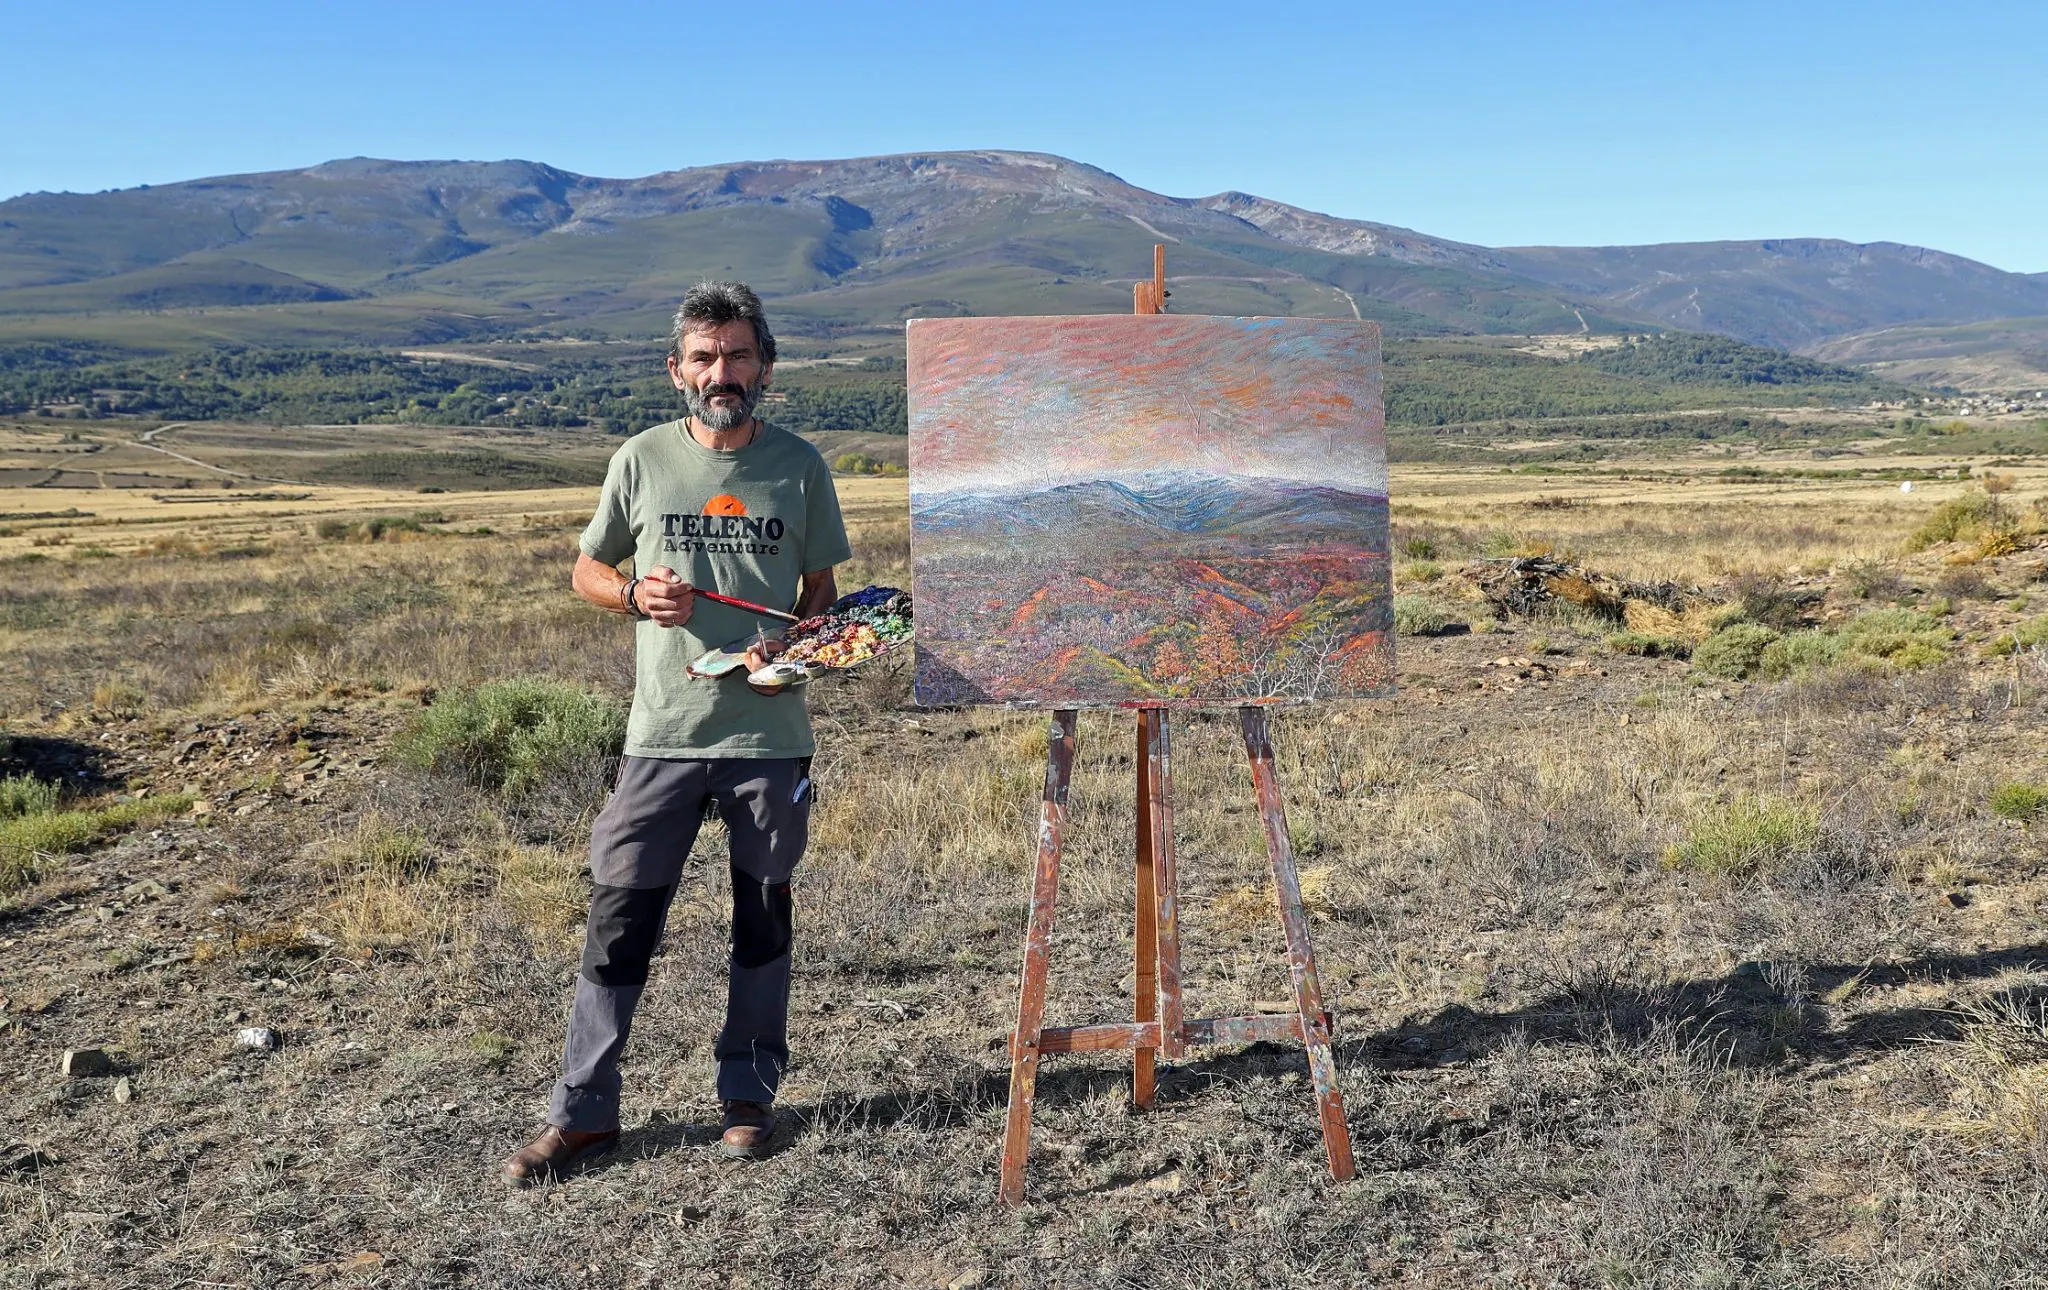 El pintor Luis Antonio Alonso recibirá la insignia de oro del grupo de acción local Montañas del Teleno